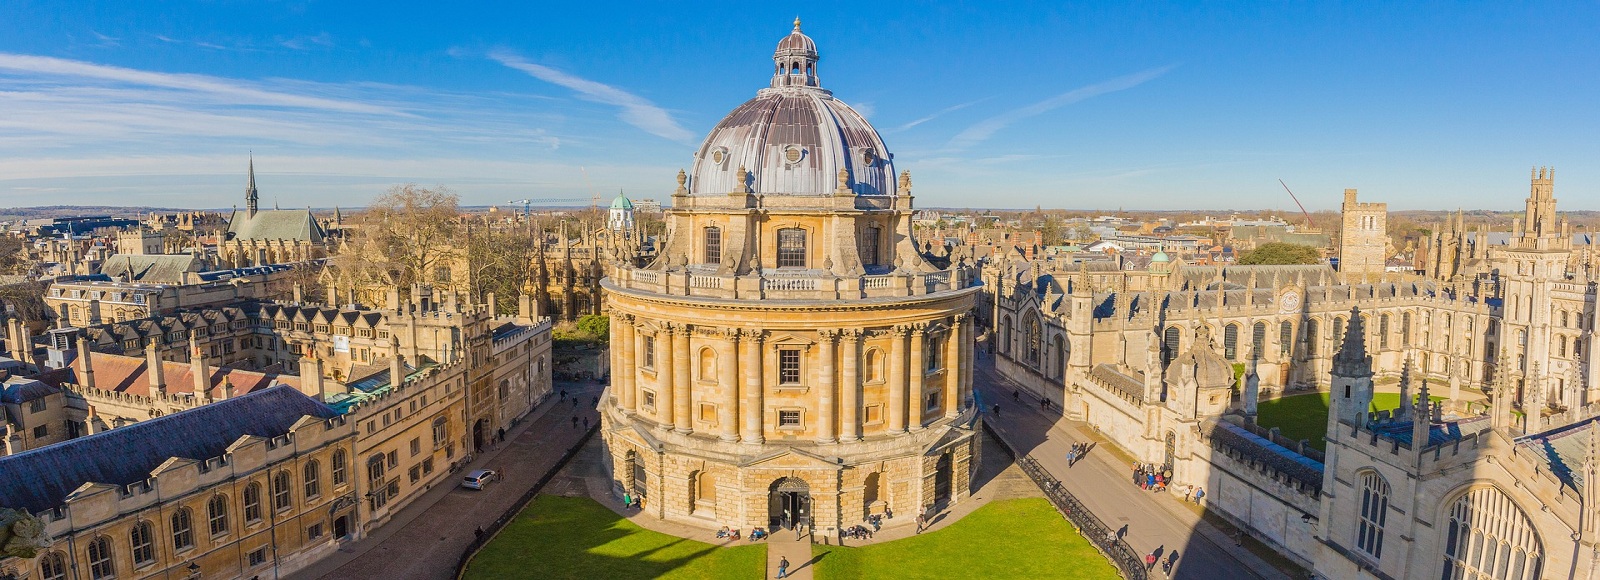 Ofertas de Traslados en Oxford. Traslados económicos en Oxford 